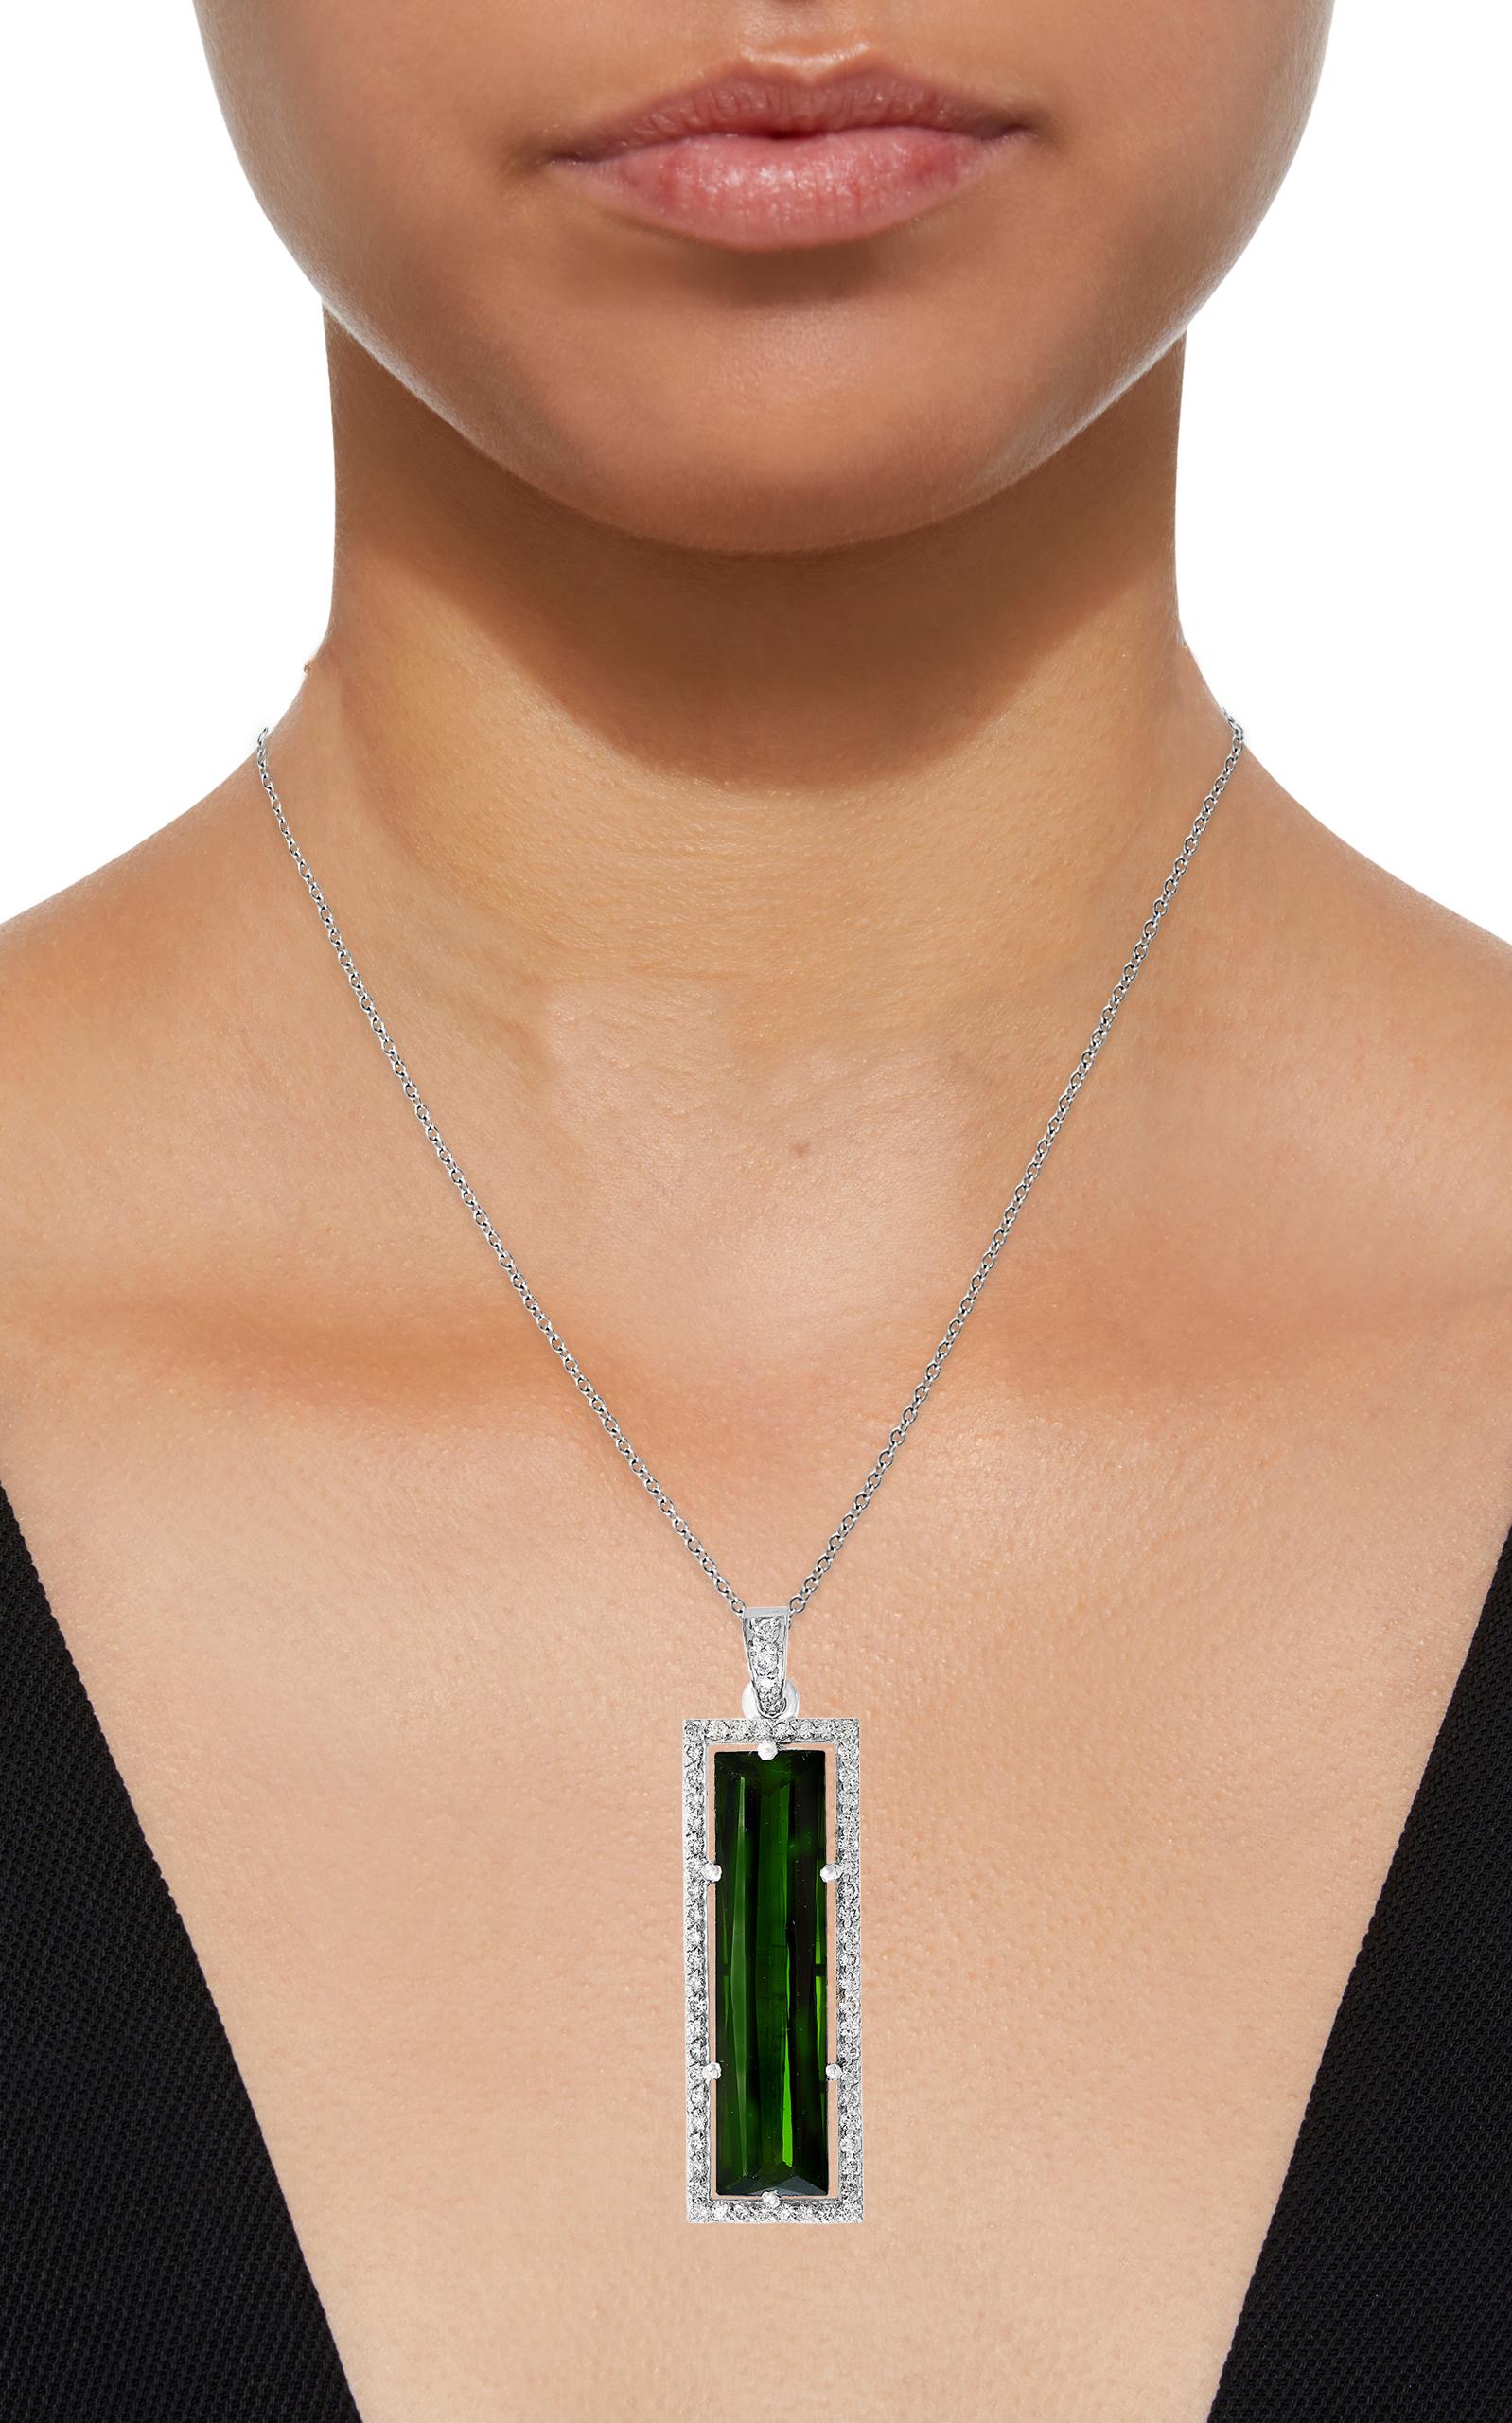 11 Carat Green Tourmaline and 1.2 Carat Diamond Pendant / Necklace 18 Karat Gold 4